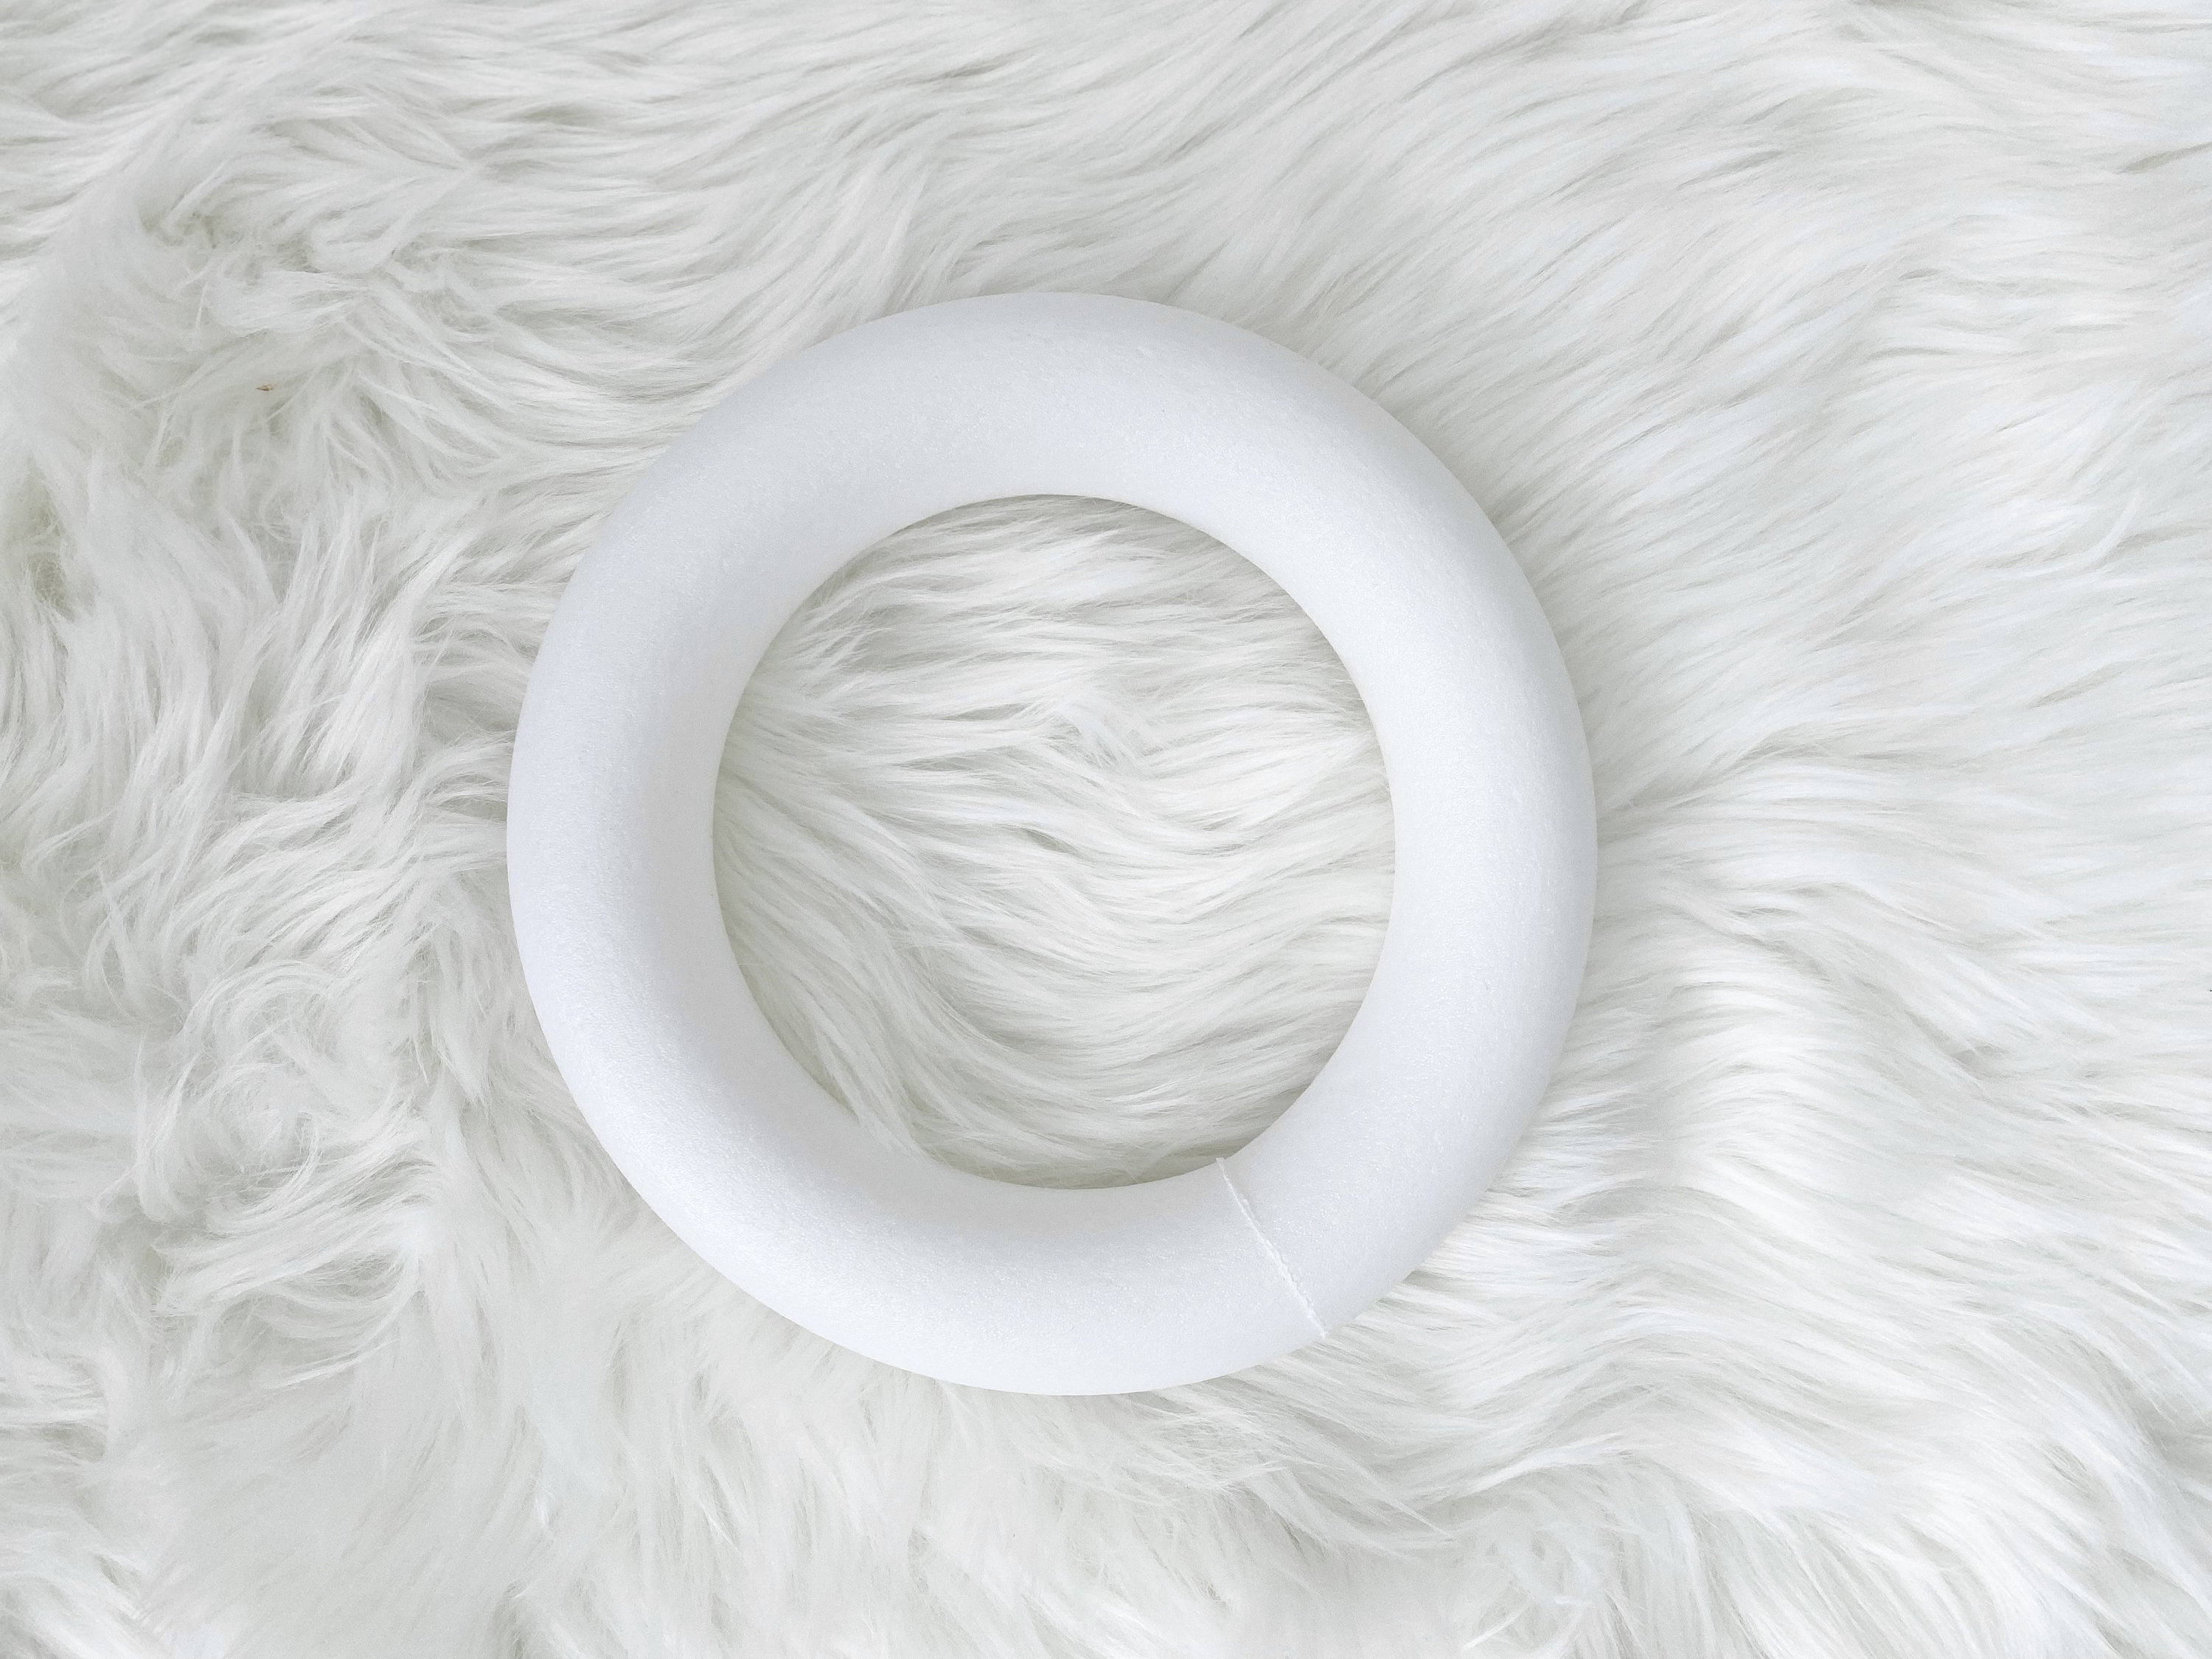 12 pcs 8 White Foam Wreath Rings